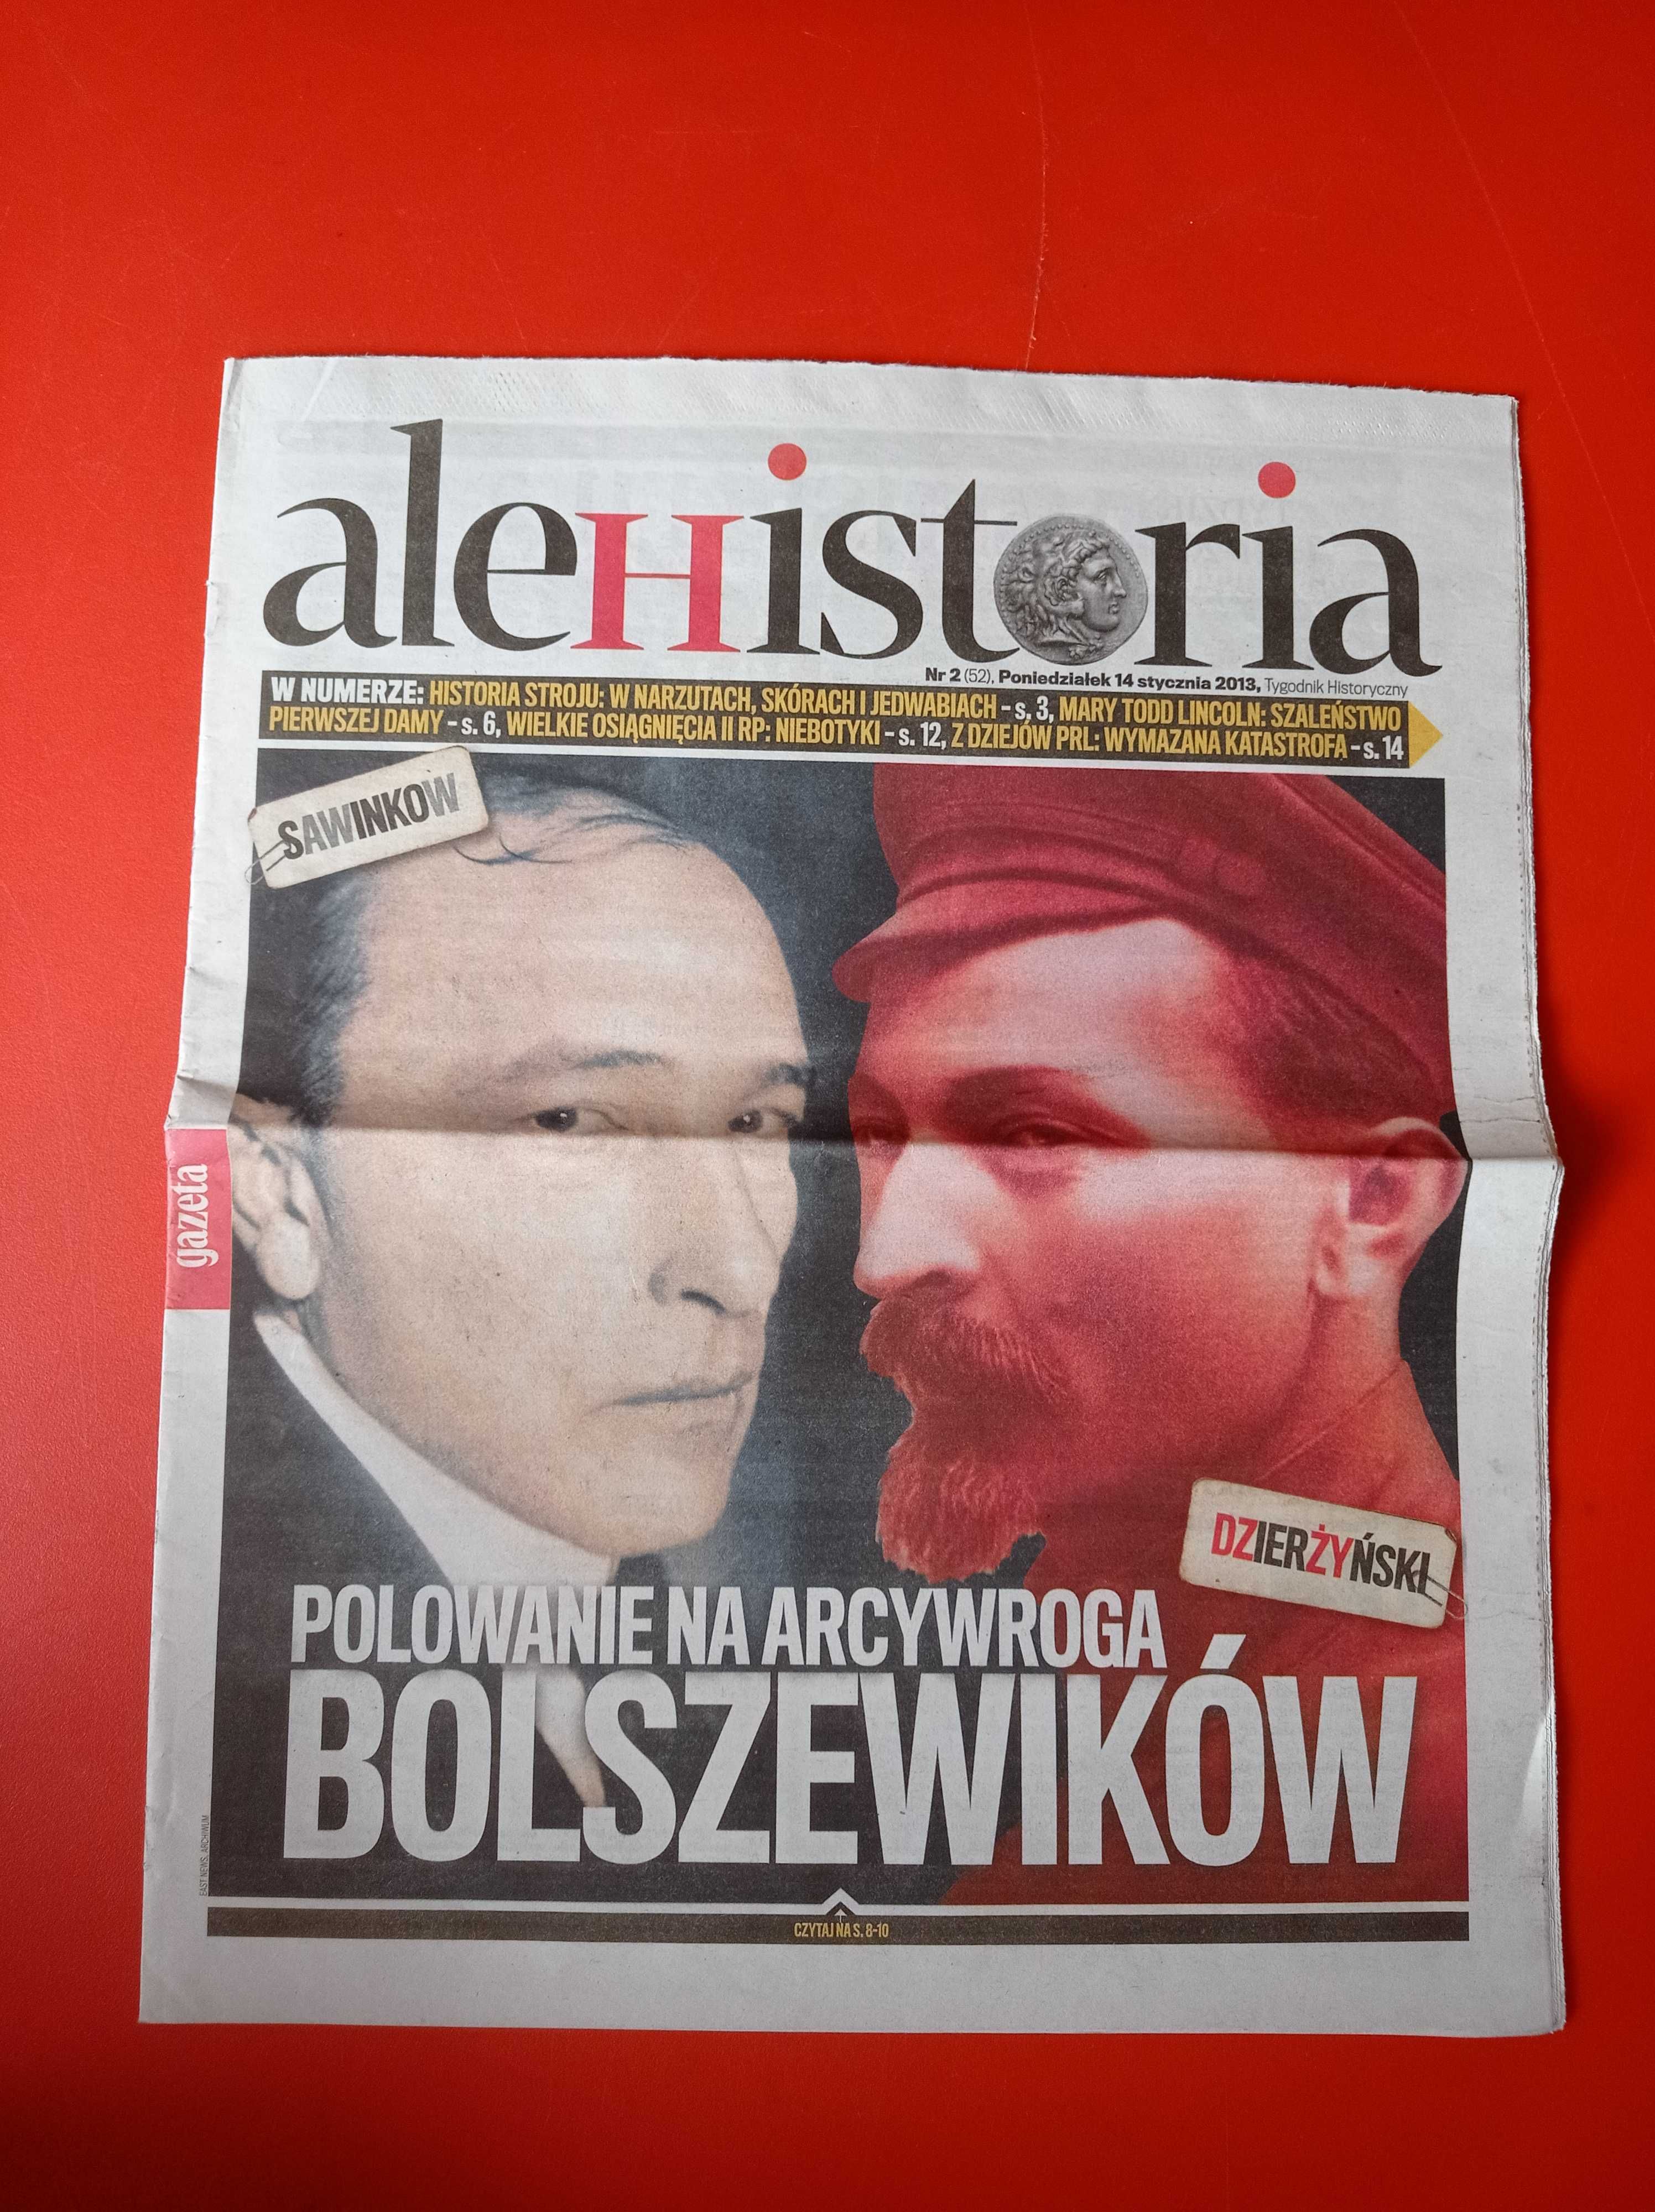 Gazeta Wyborcza ale Historia 2, 14 stycznia 2013